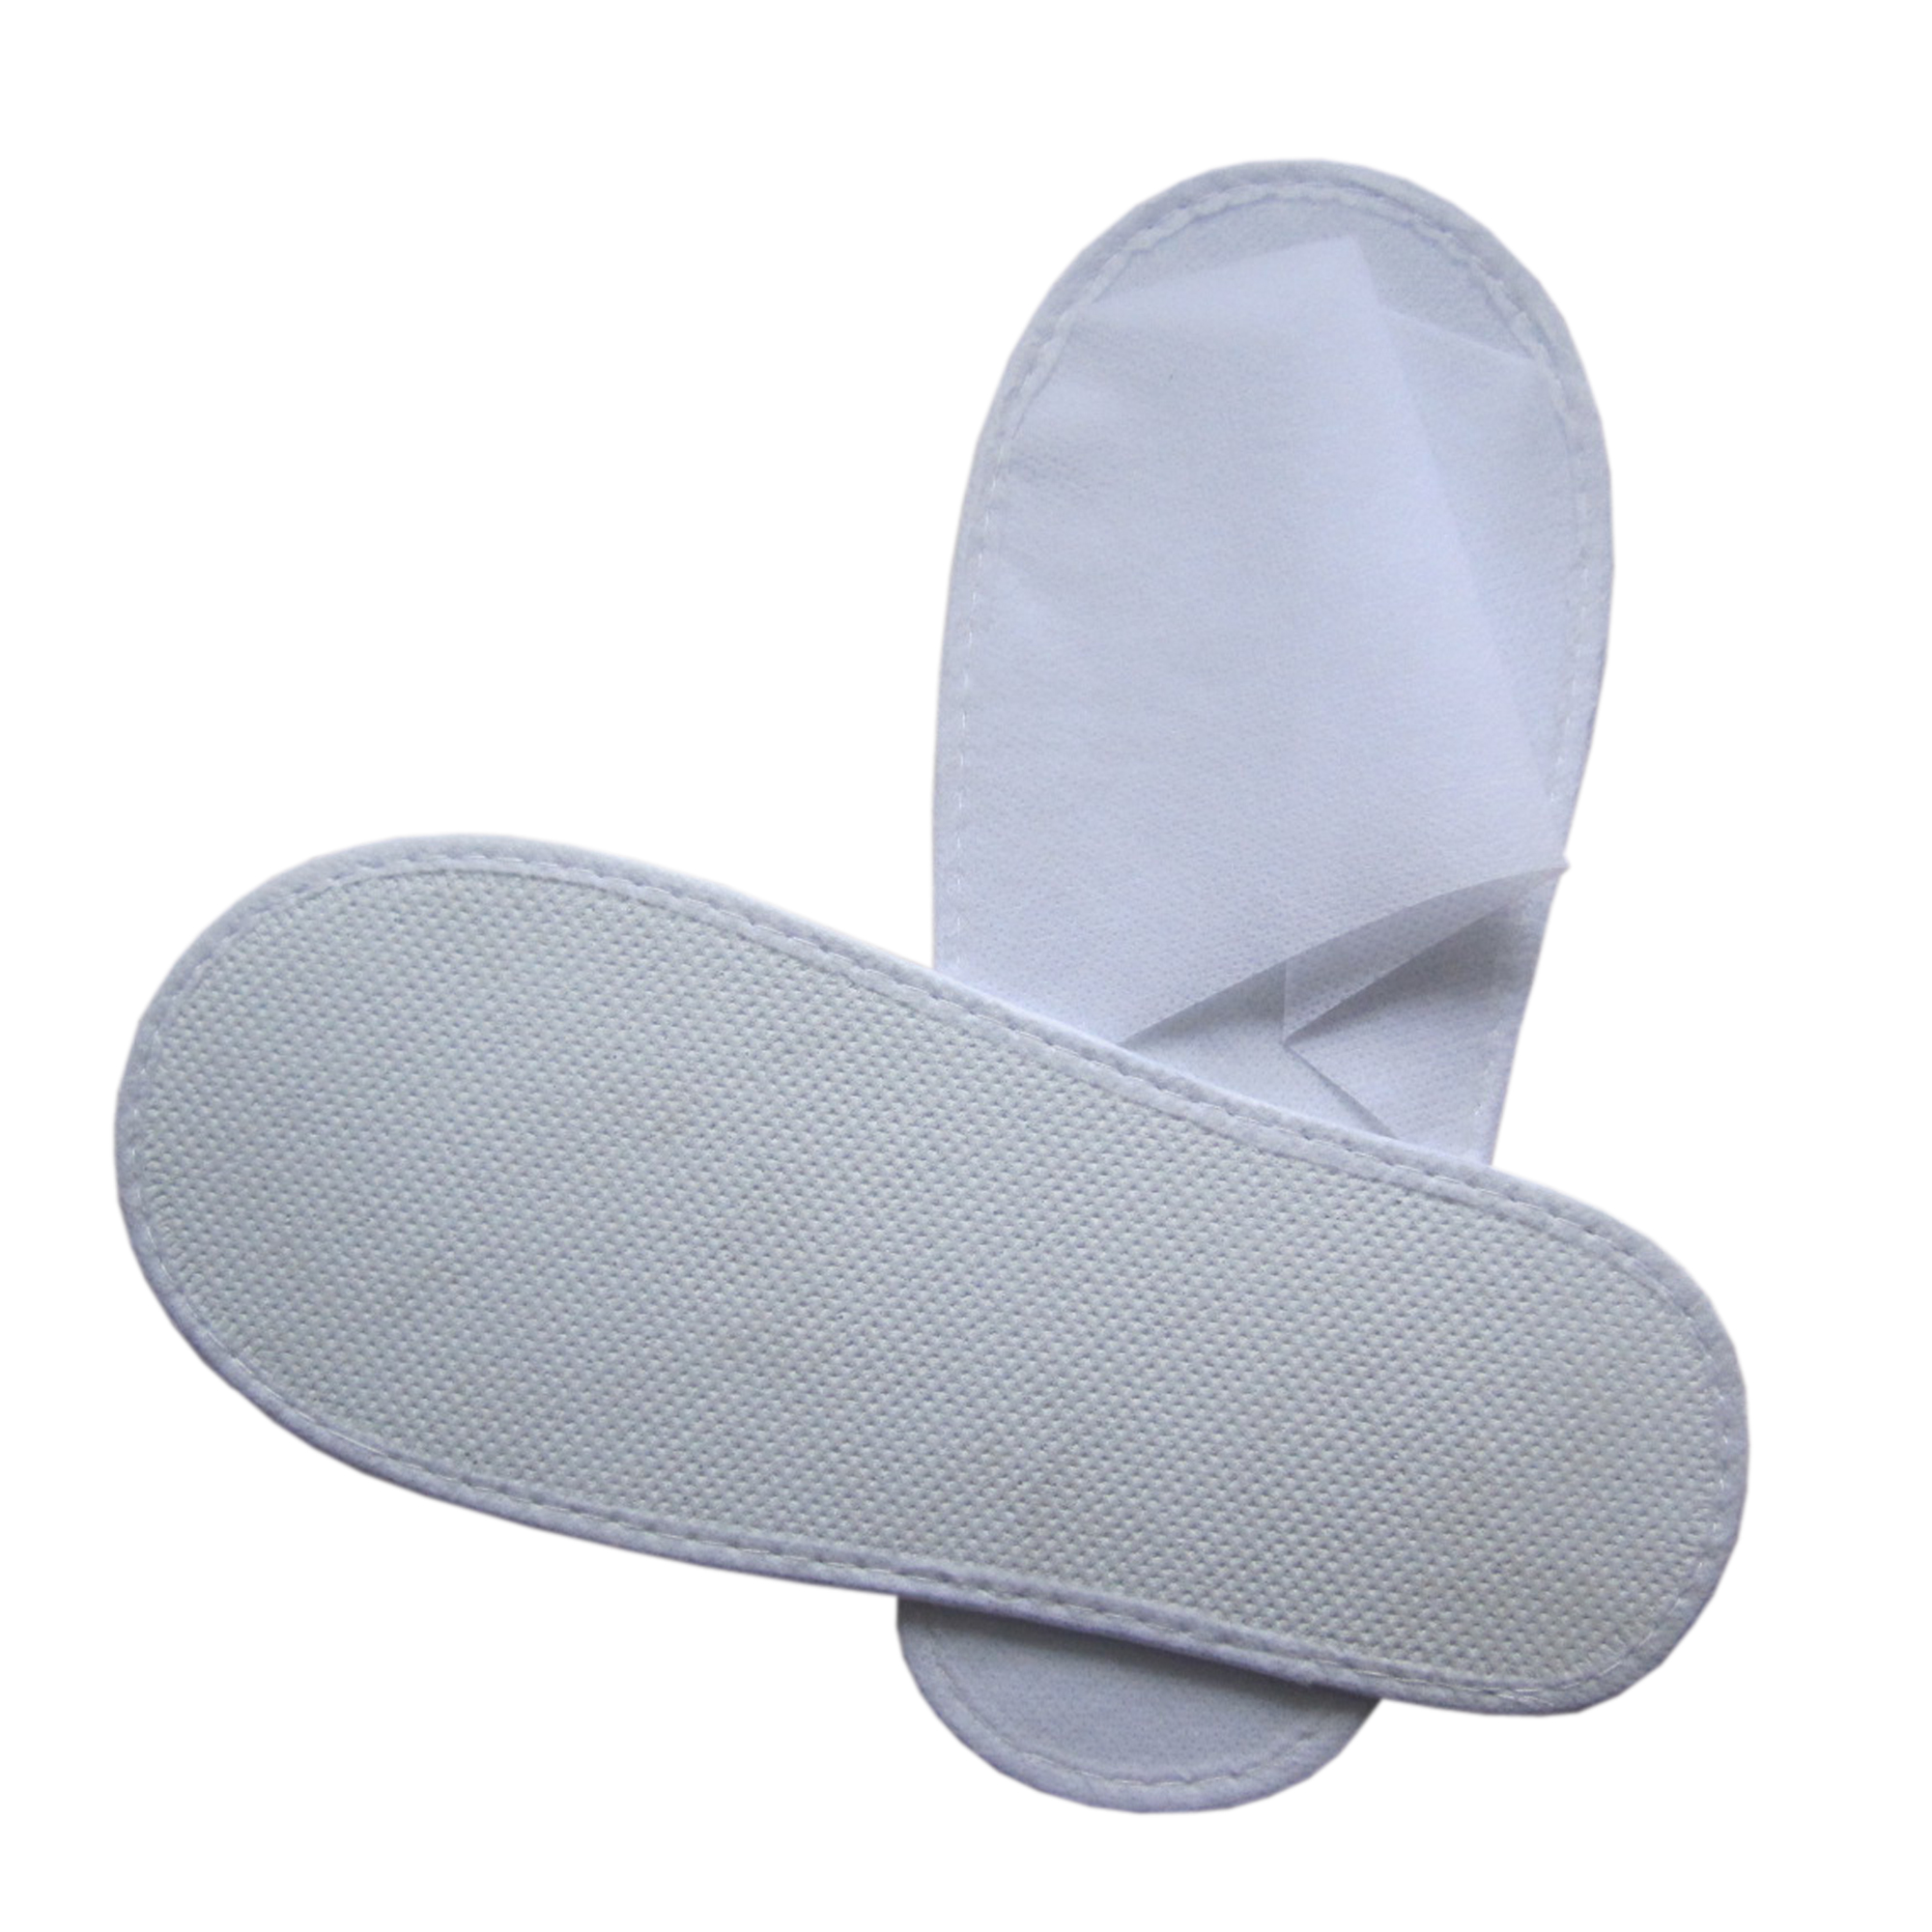 Disposable non-woven slipper with EVA shoe sole